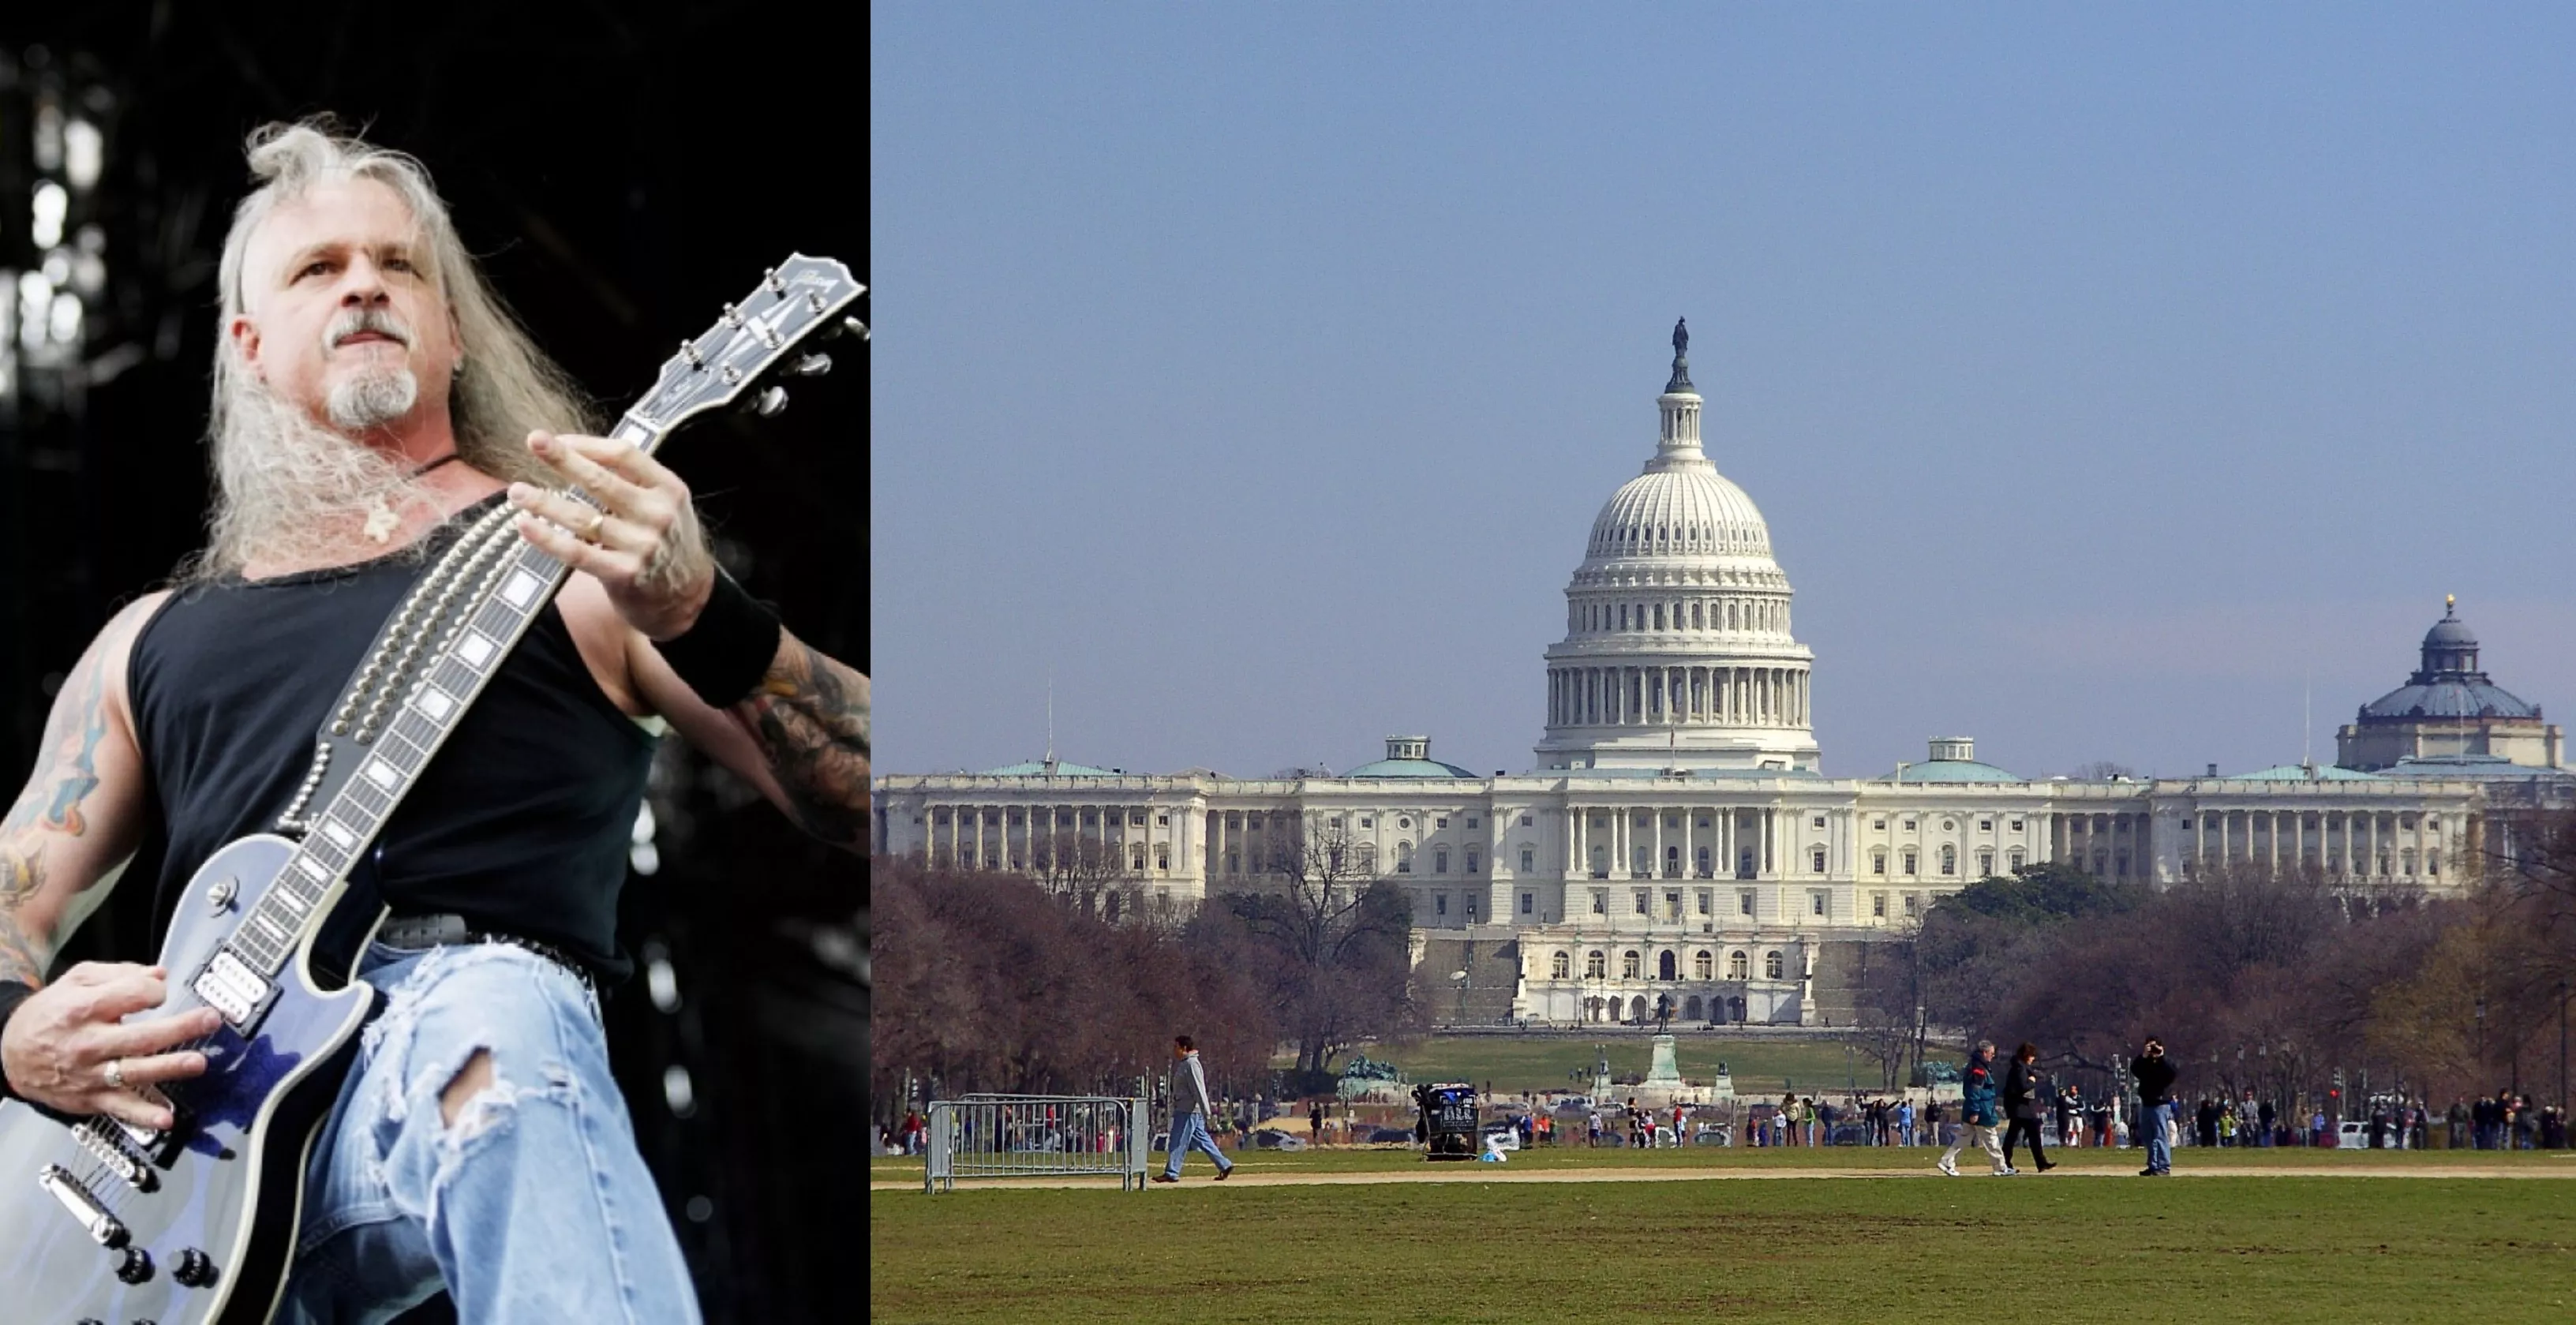 Her stormer guitaristen Kongressen – deltager i det voldsomme oprør